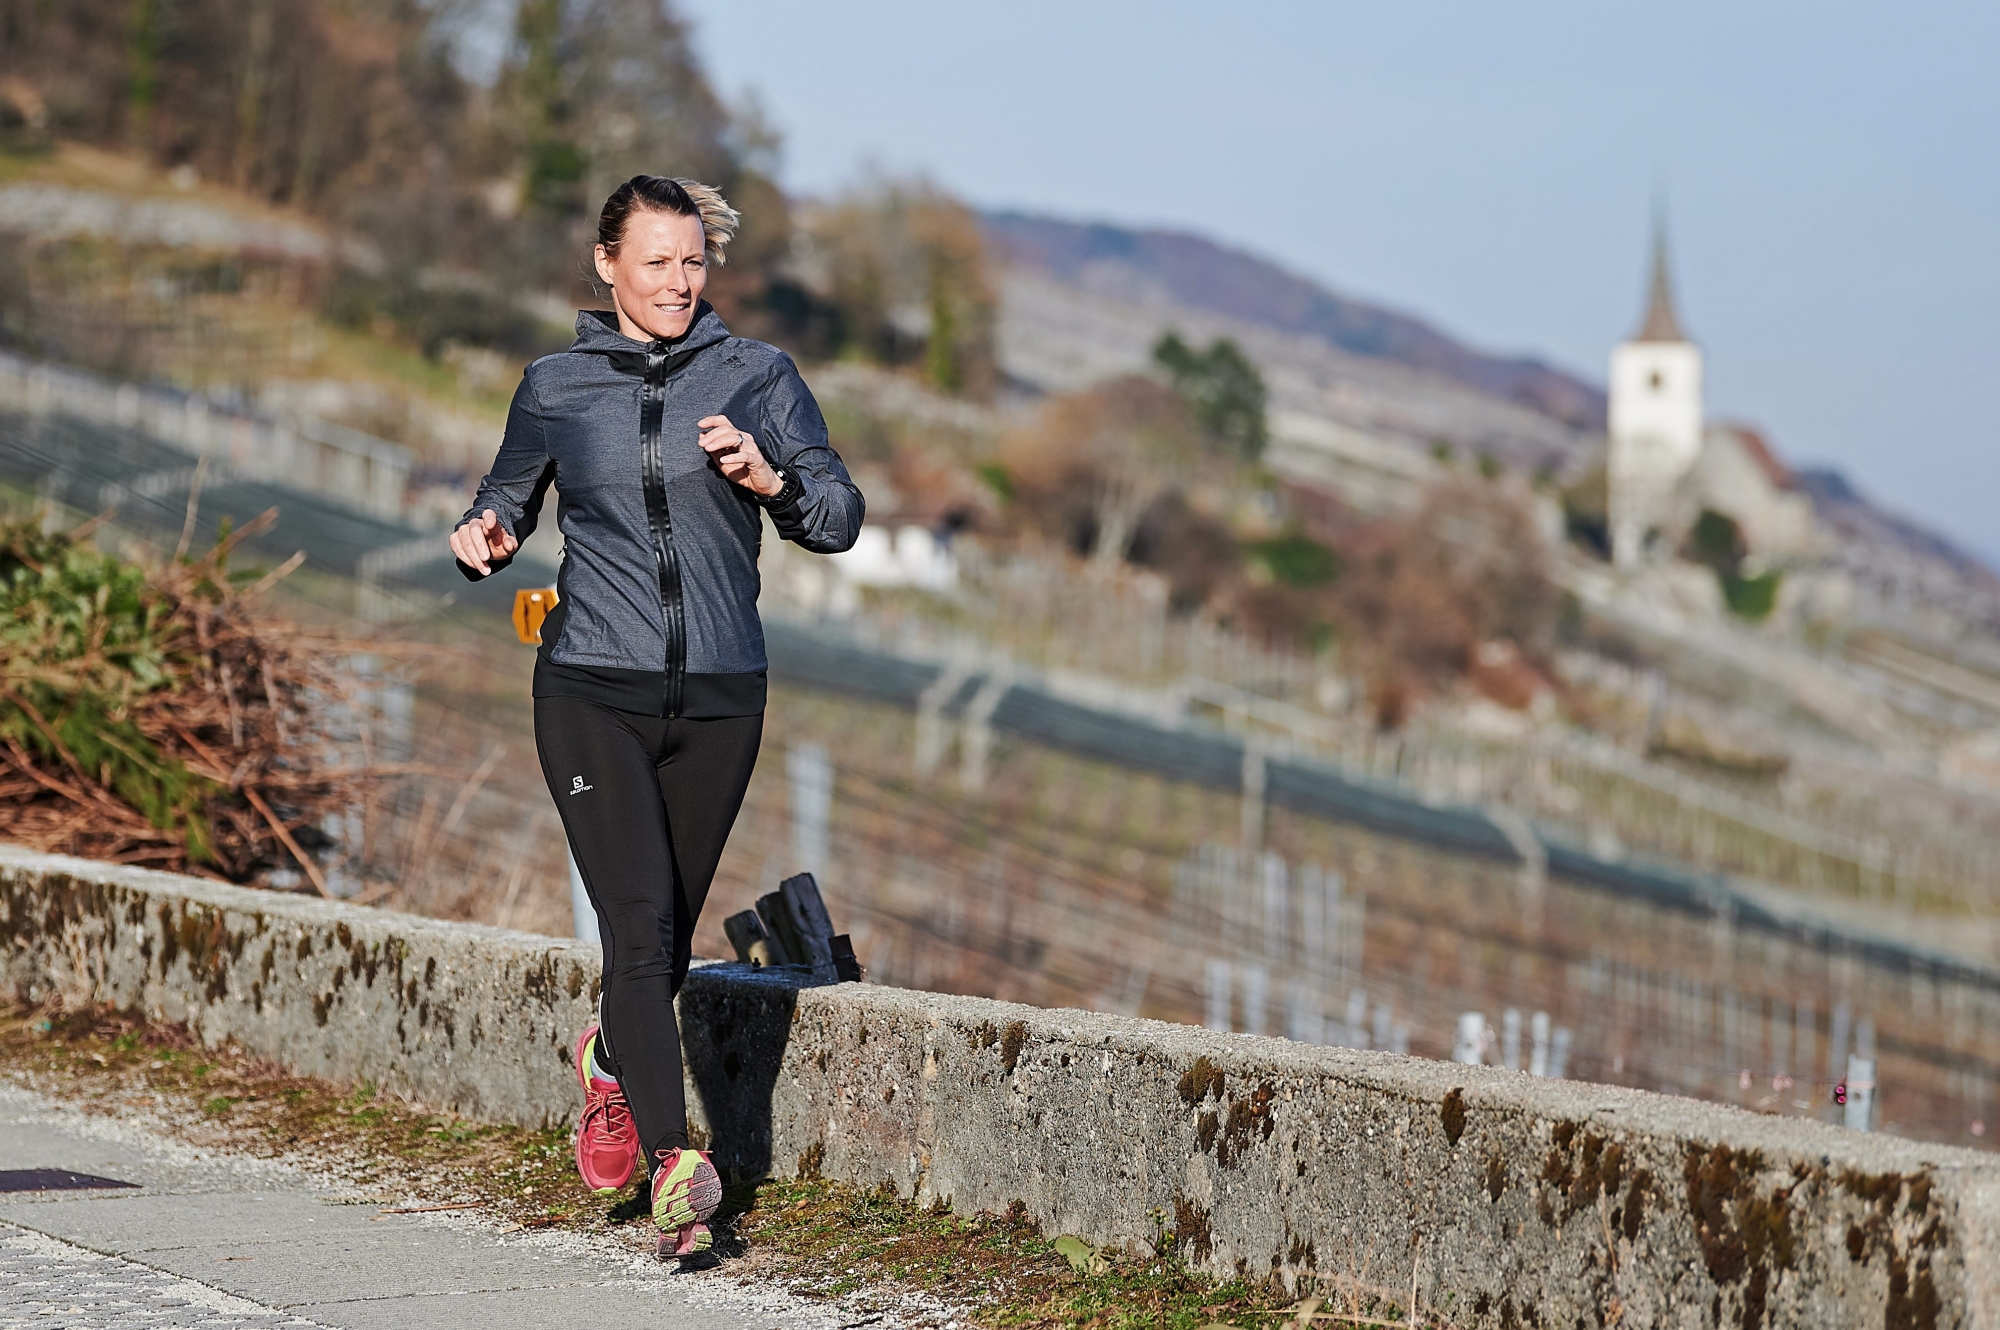 Diététicienne à Neuchâtel, Séverine Chédel pratique régulièrement la course à pied. 